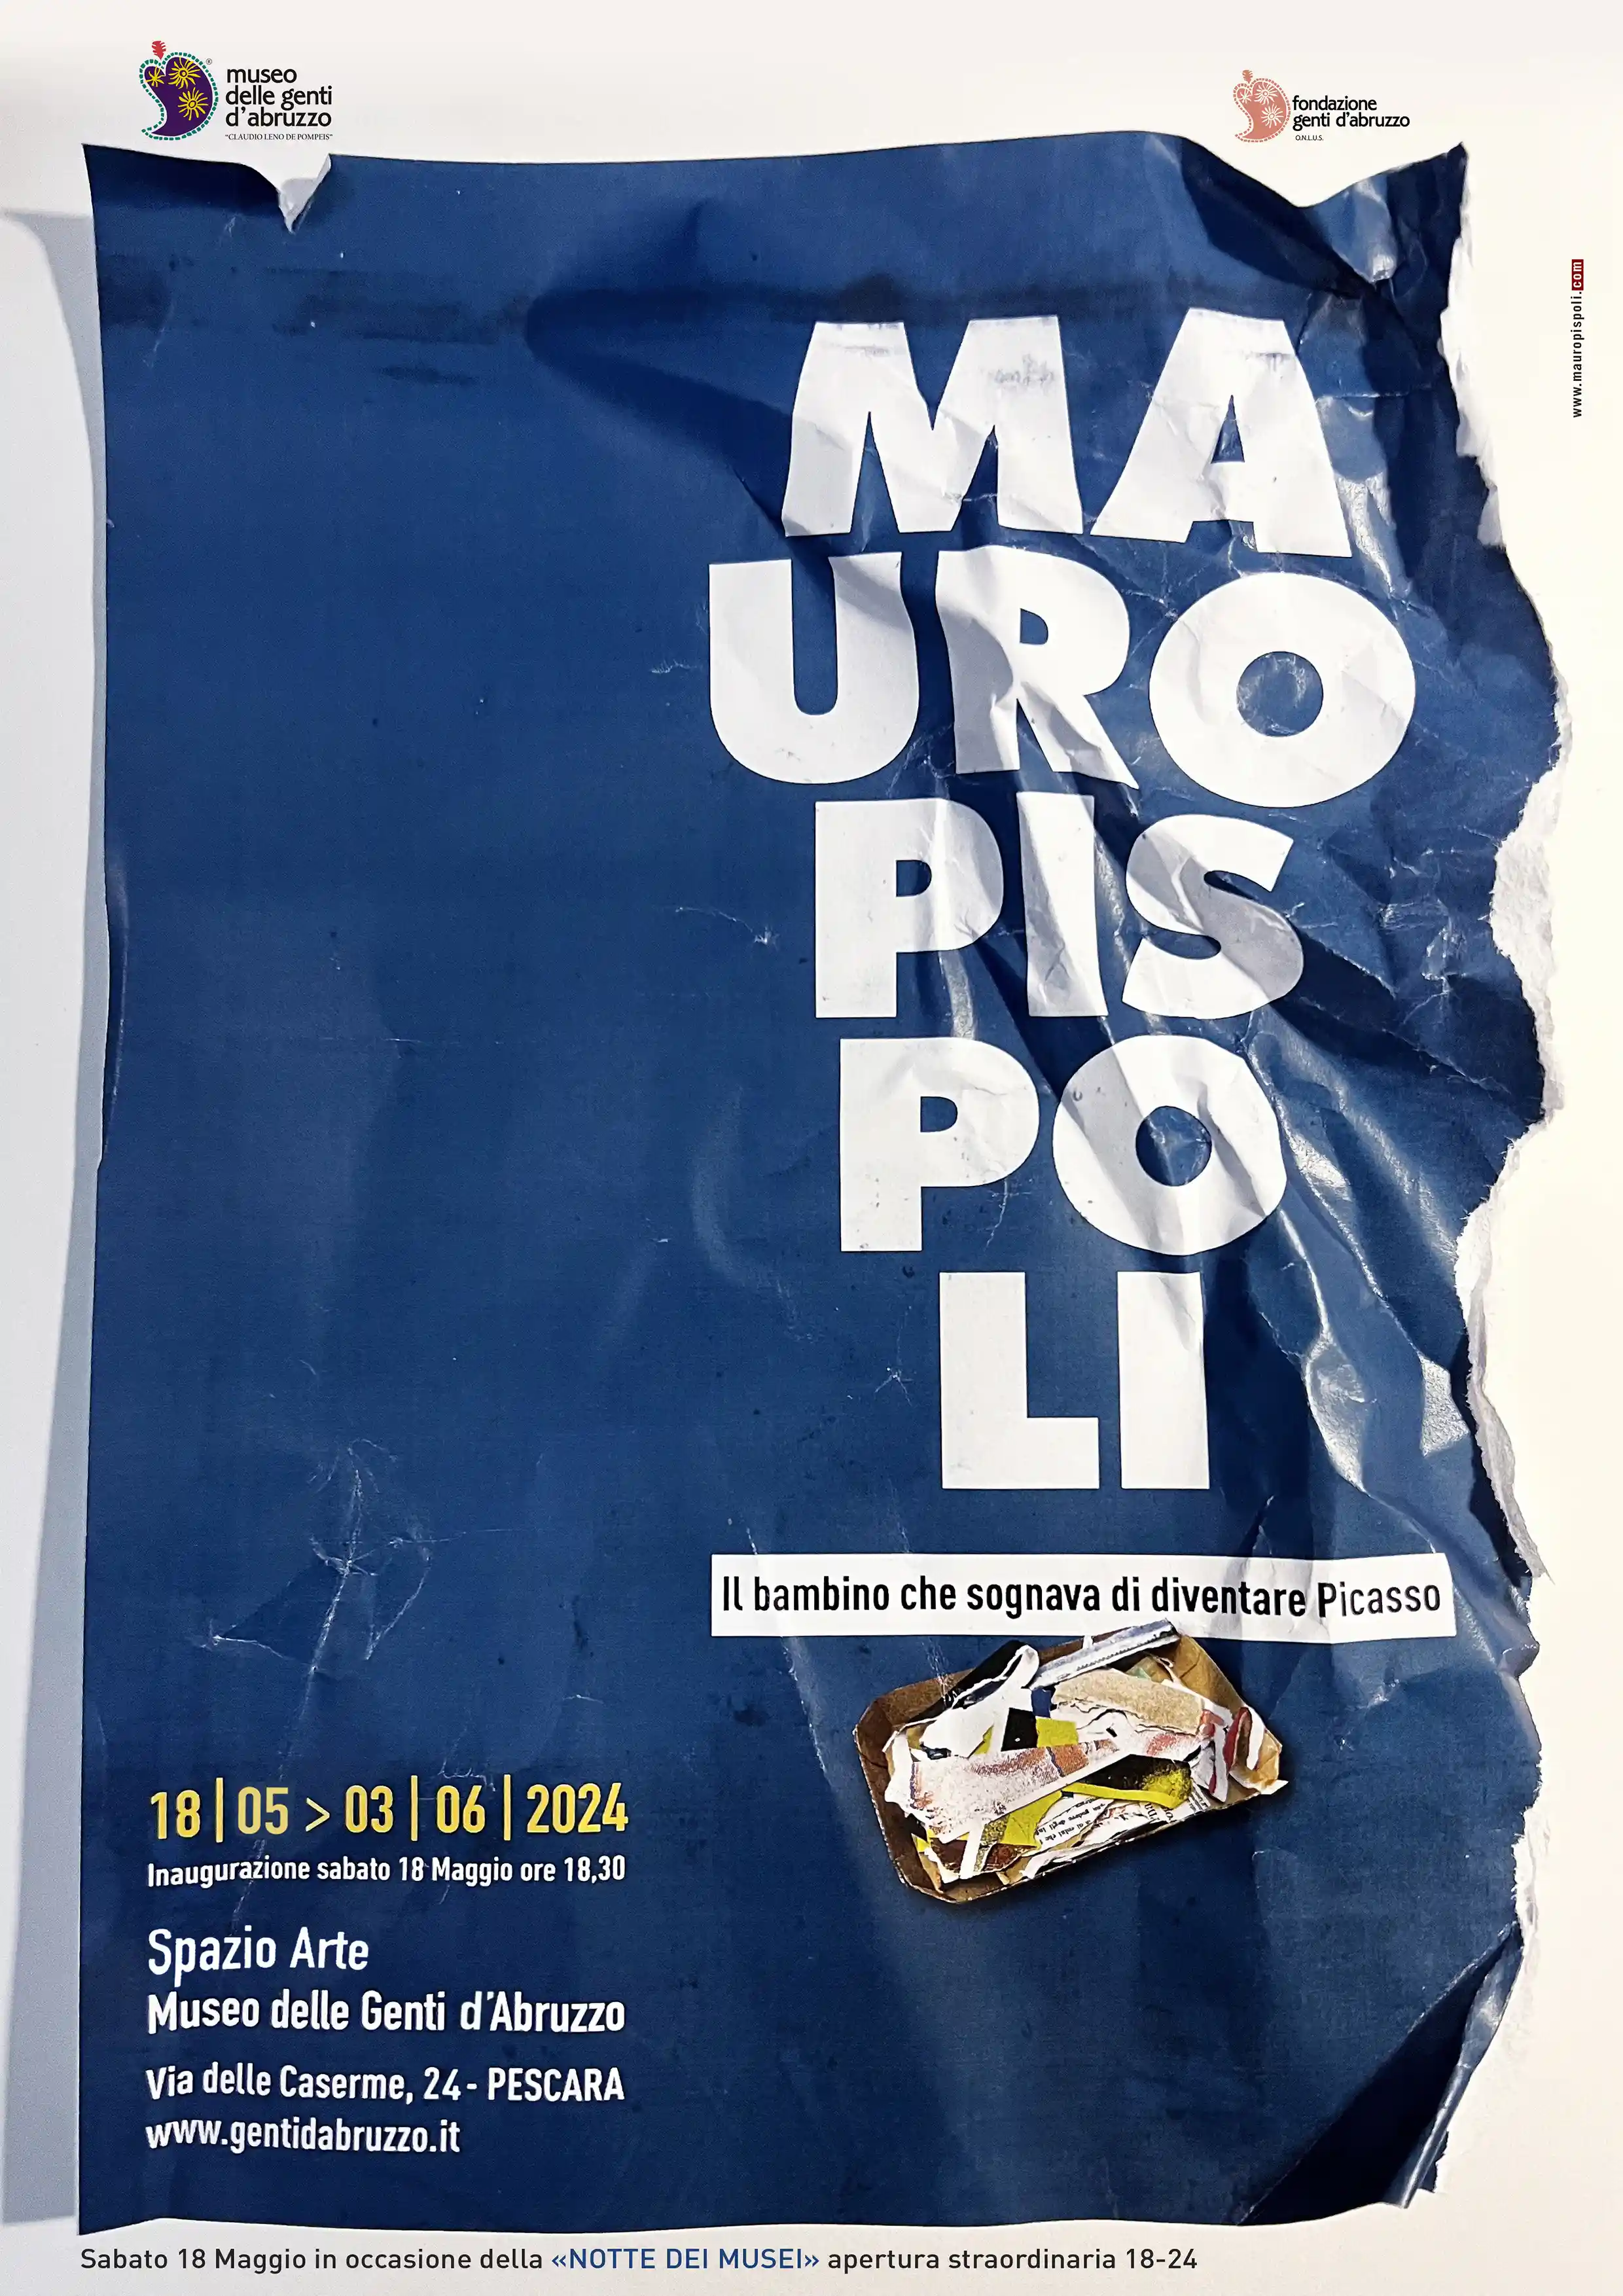 "Il bambino che sognava di diventare Picasso", la mostra di Mauro Pispoli al Museo delle Genti d'Abruzzo, Pescara, dal 18 maggio